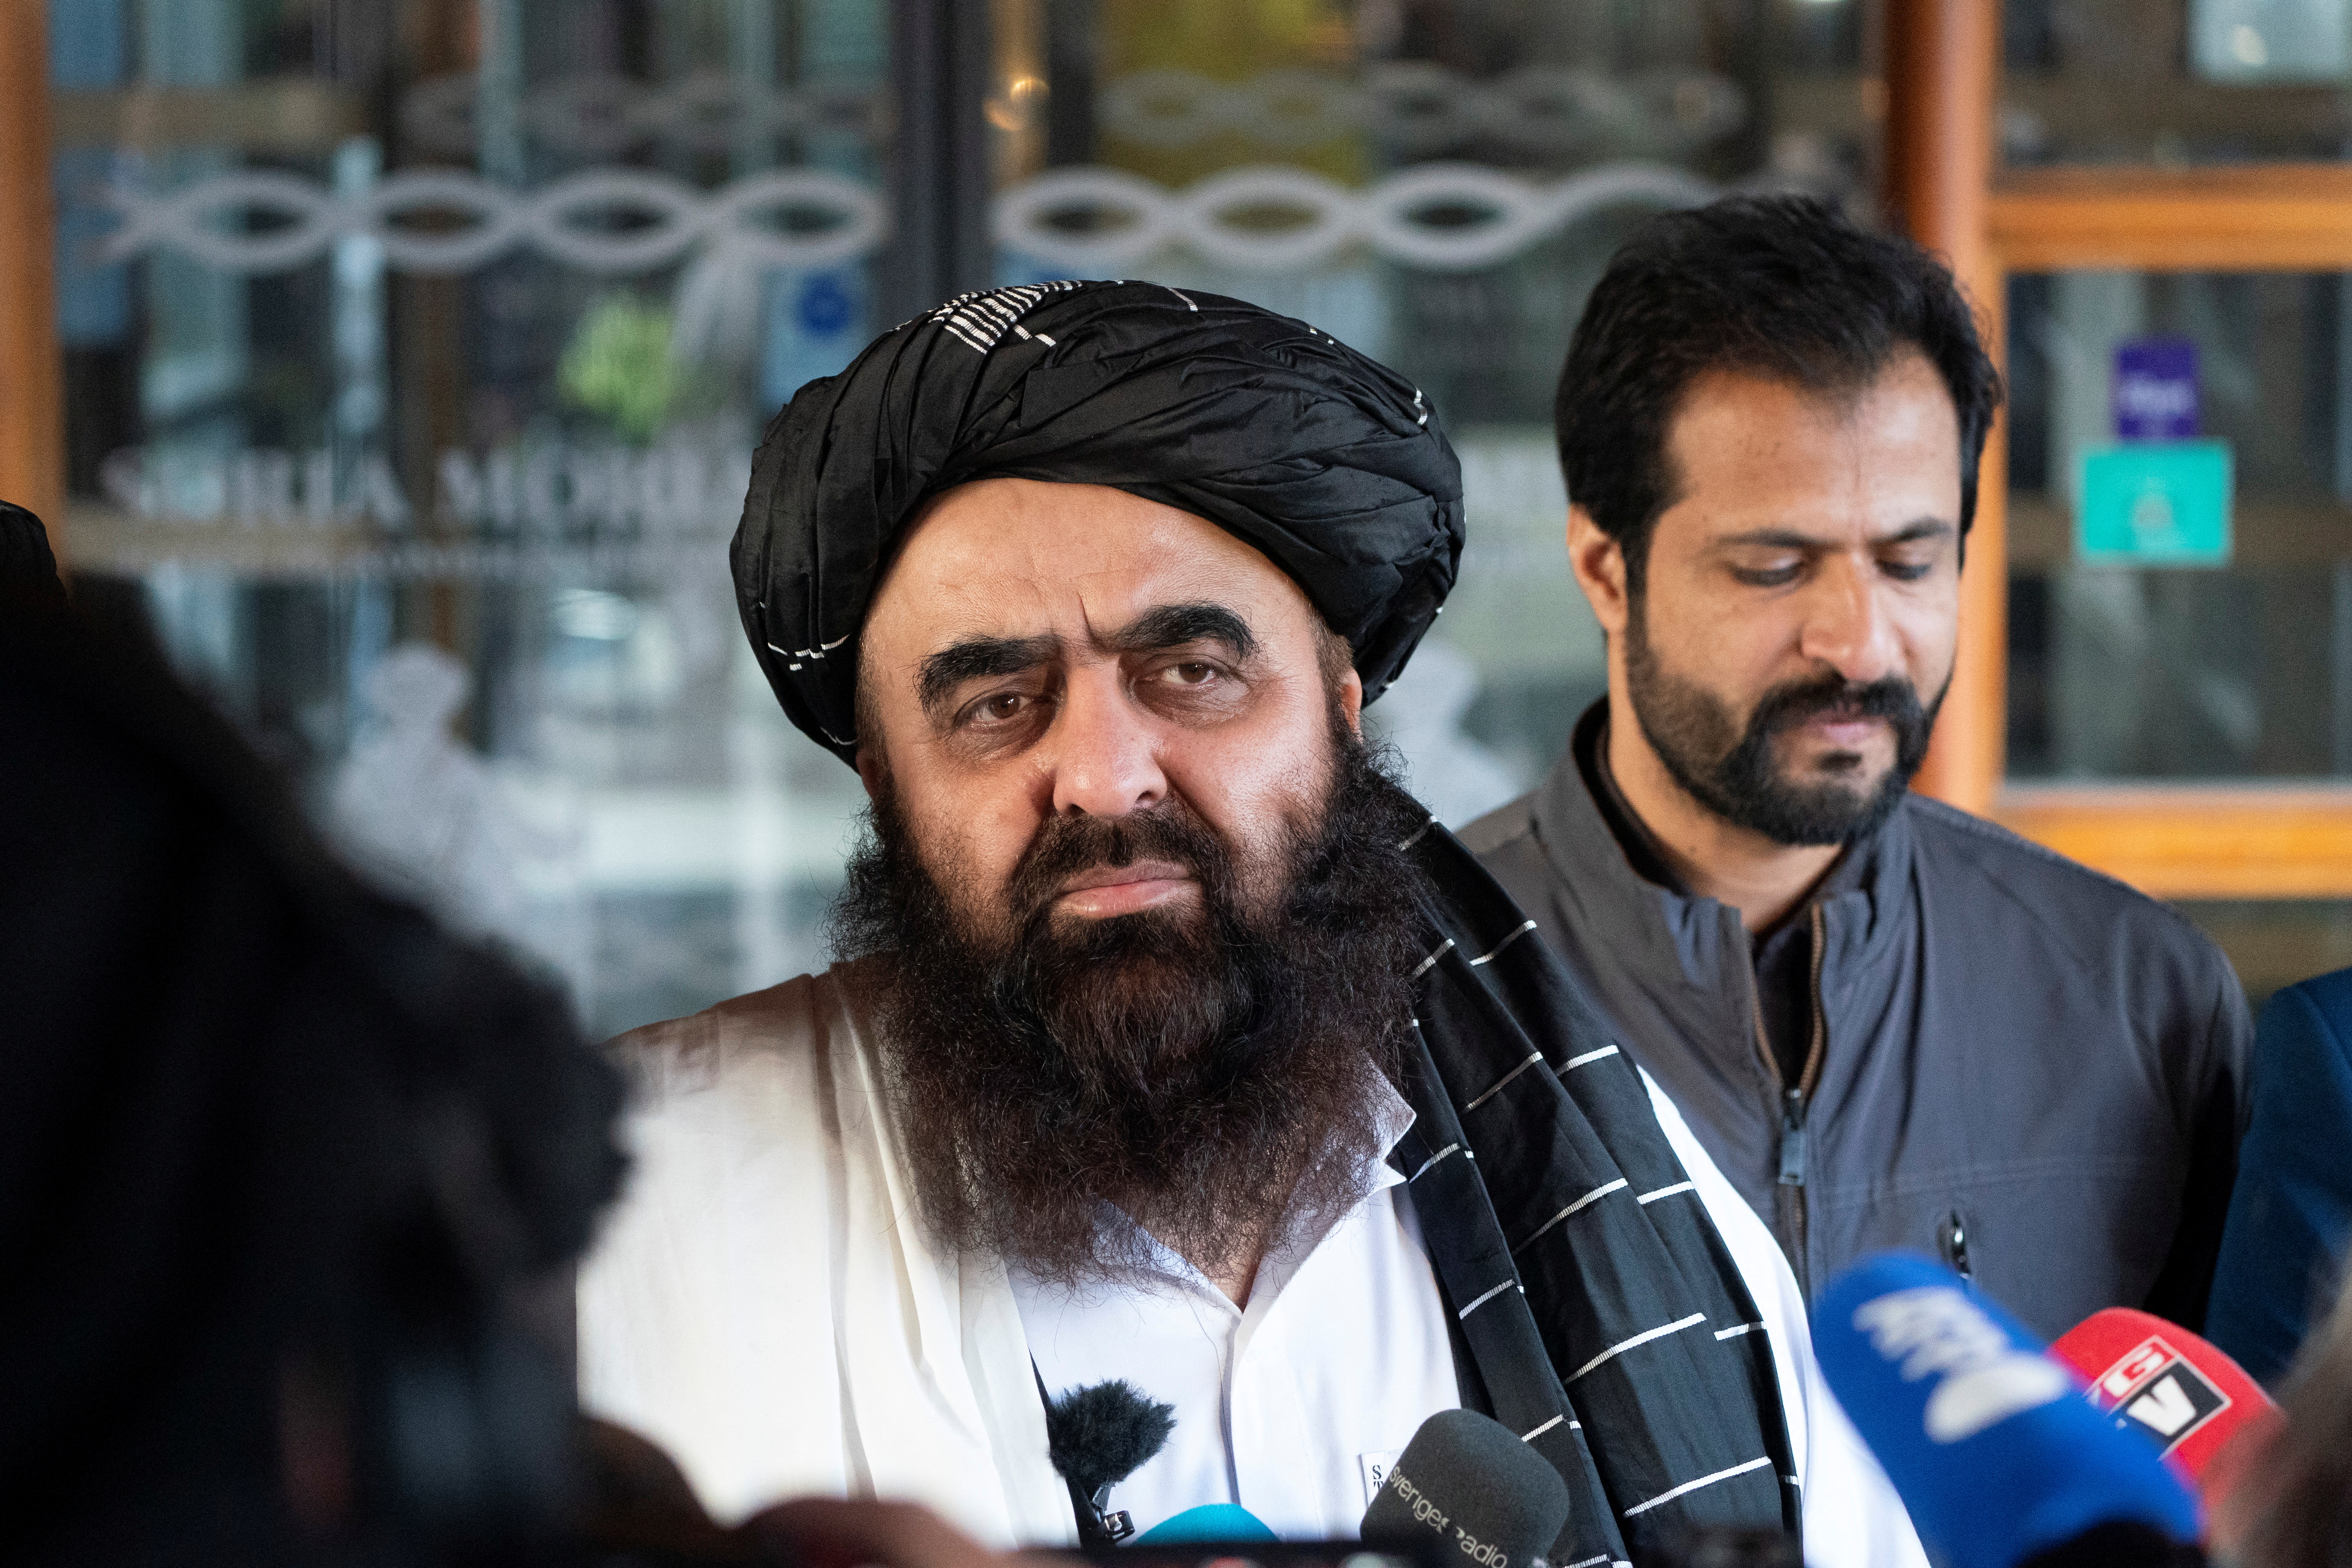 El Ministro de Asuntos Exteriores en funciones de los talibanes, Amir Khan Muttaqi, hace declaraciones a la prensa en el exterior del hotel Soria Moria en Oslo, Noruega, el 24 de enero de 2022. NTB/Terje Pedersen vía REUTERS